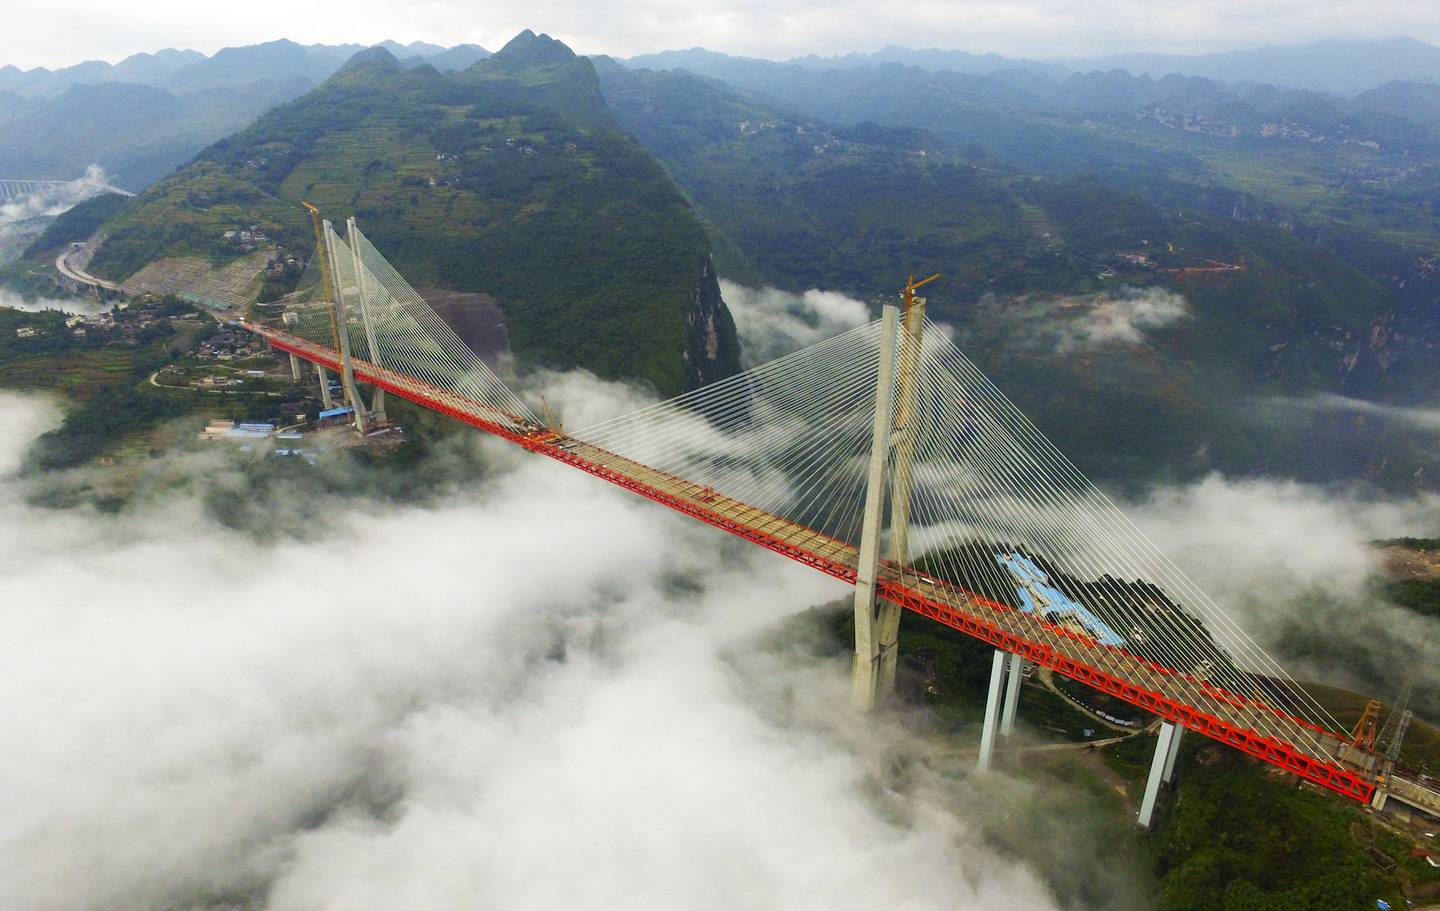 pontes incríveis espalhadas pelo mundo